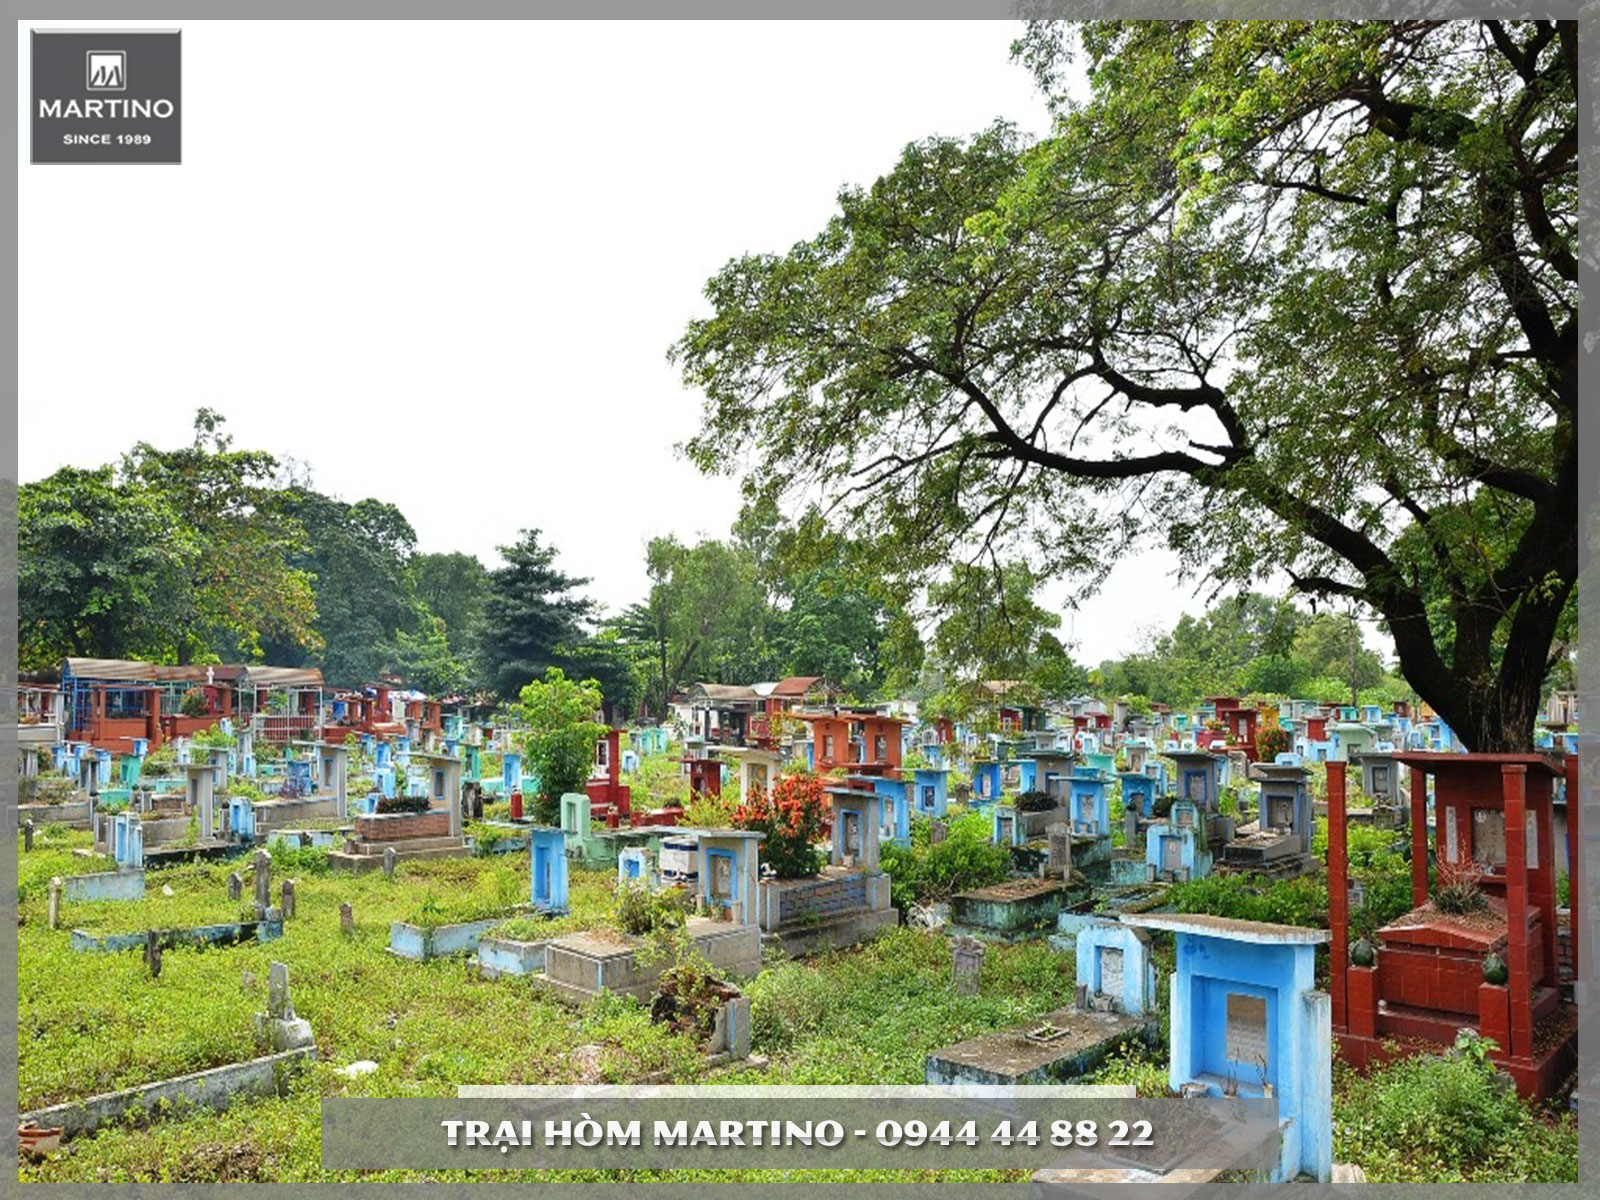 Nghĩa trang Bình Hưng Hòa là nơi an cư dành cho người đã khuất